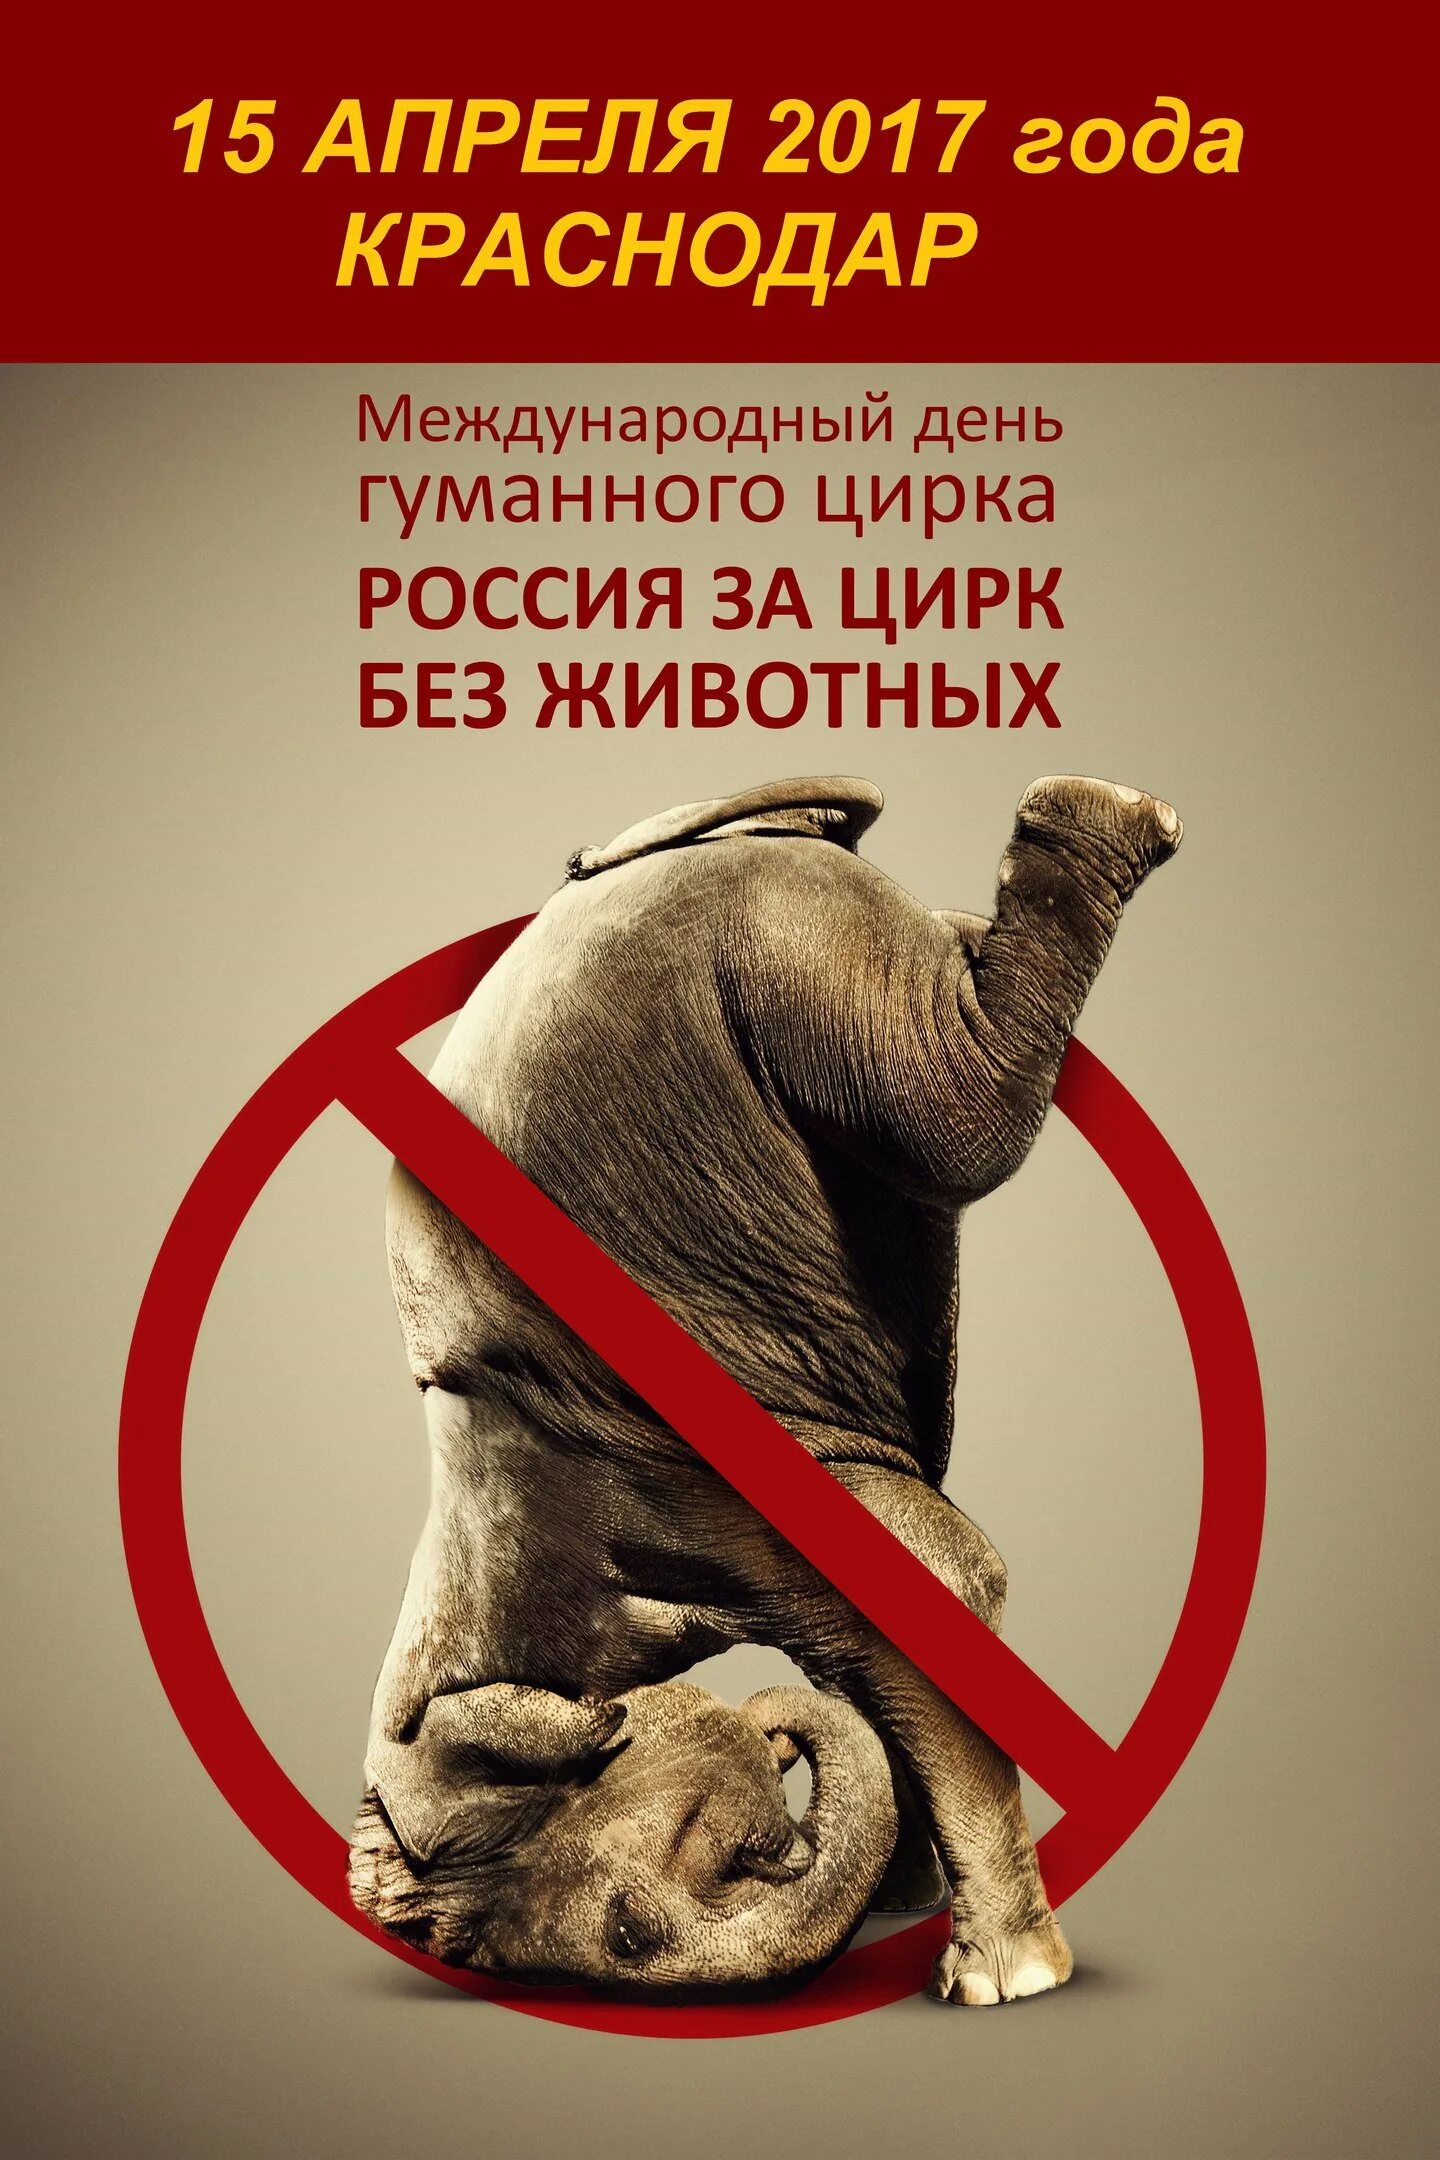 Зоопорно в россии запрещено. Против цирка с животными. Запретили животных в цирке. Запрет цирков с животными. Социальные плакаты с животными.